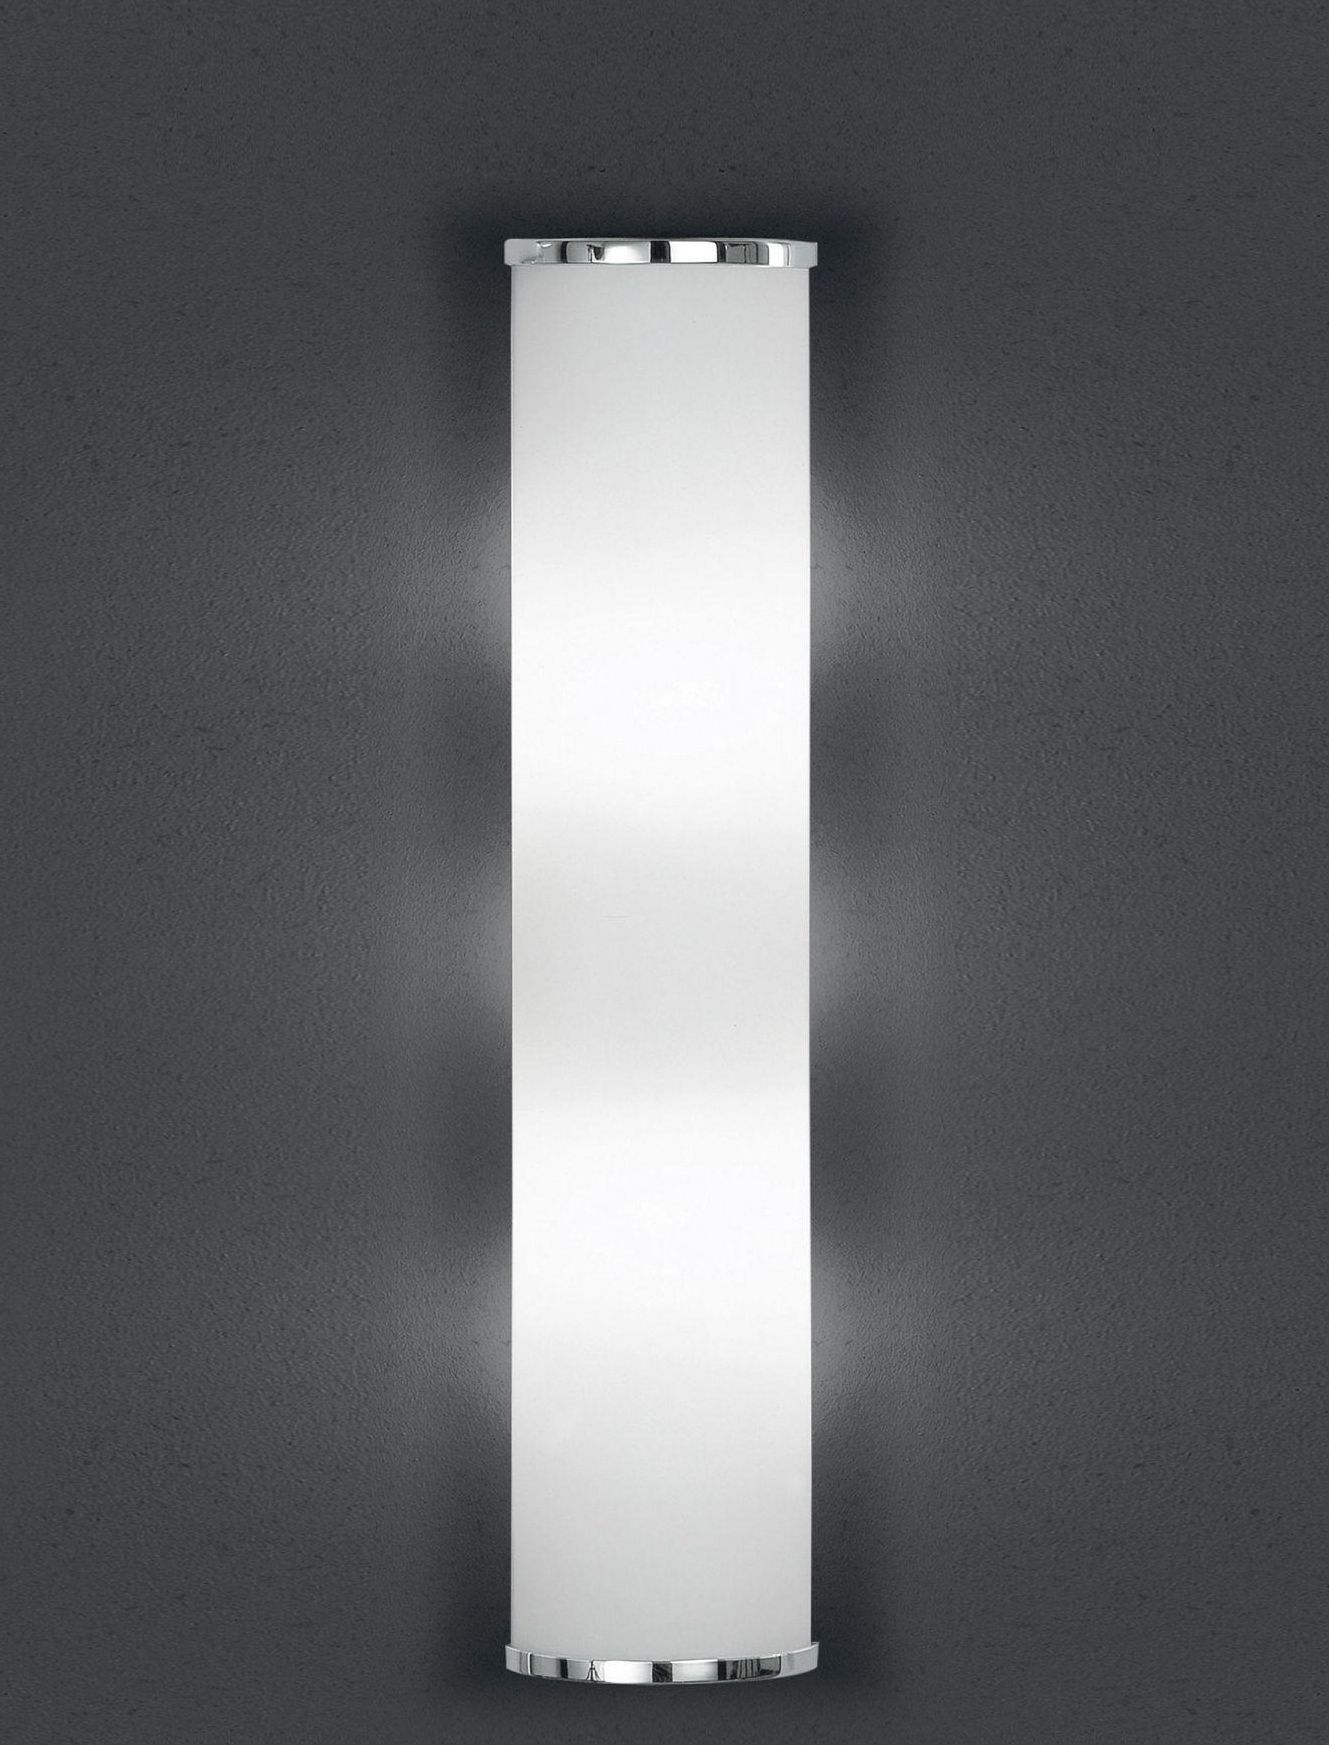 BANKAMP Leuchtenmanufaktur Klassische Wandleuchten & Wandlampen fürs Wohnzimmer von BANKAMP Leuchtenmanufaktur LED-Wandleuchte Cromo 4295/530-02